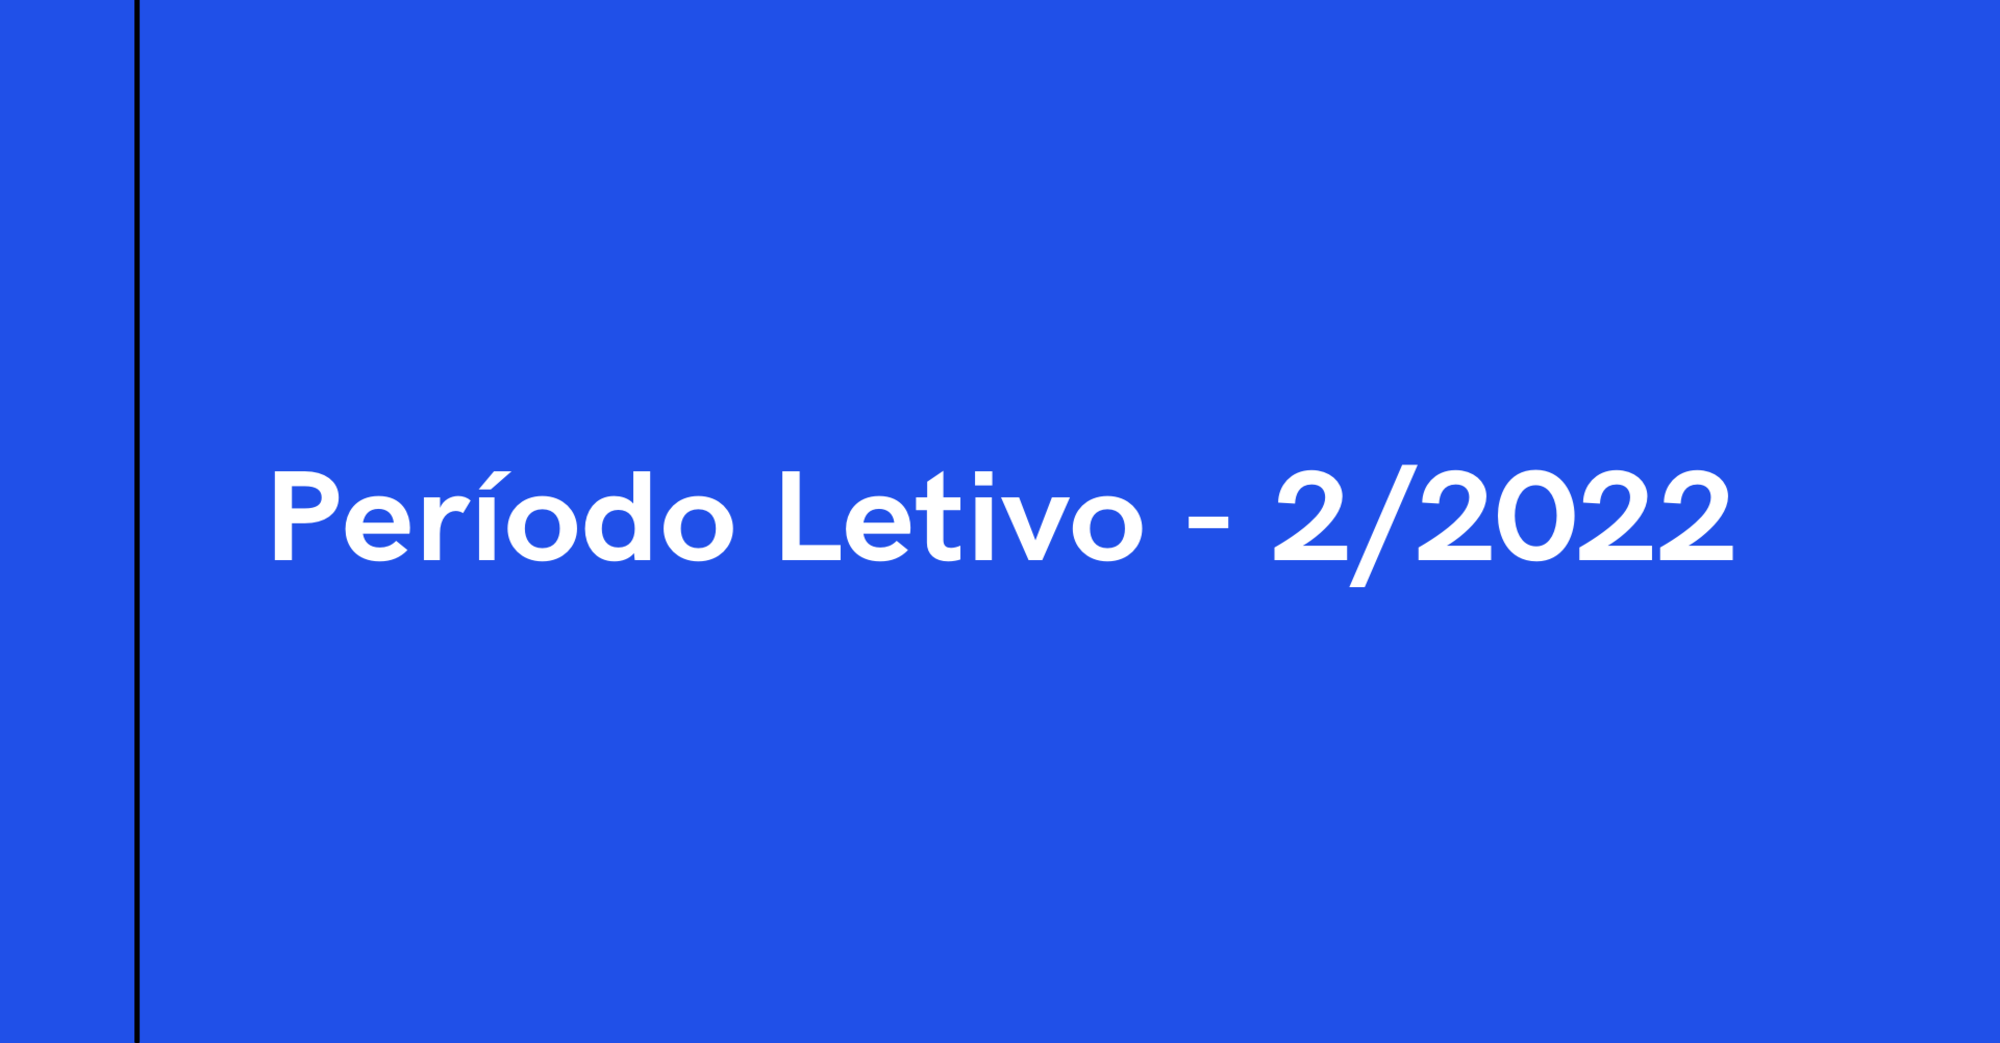 Período Letivo 2 - 2022 (PL-2/2022)